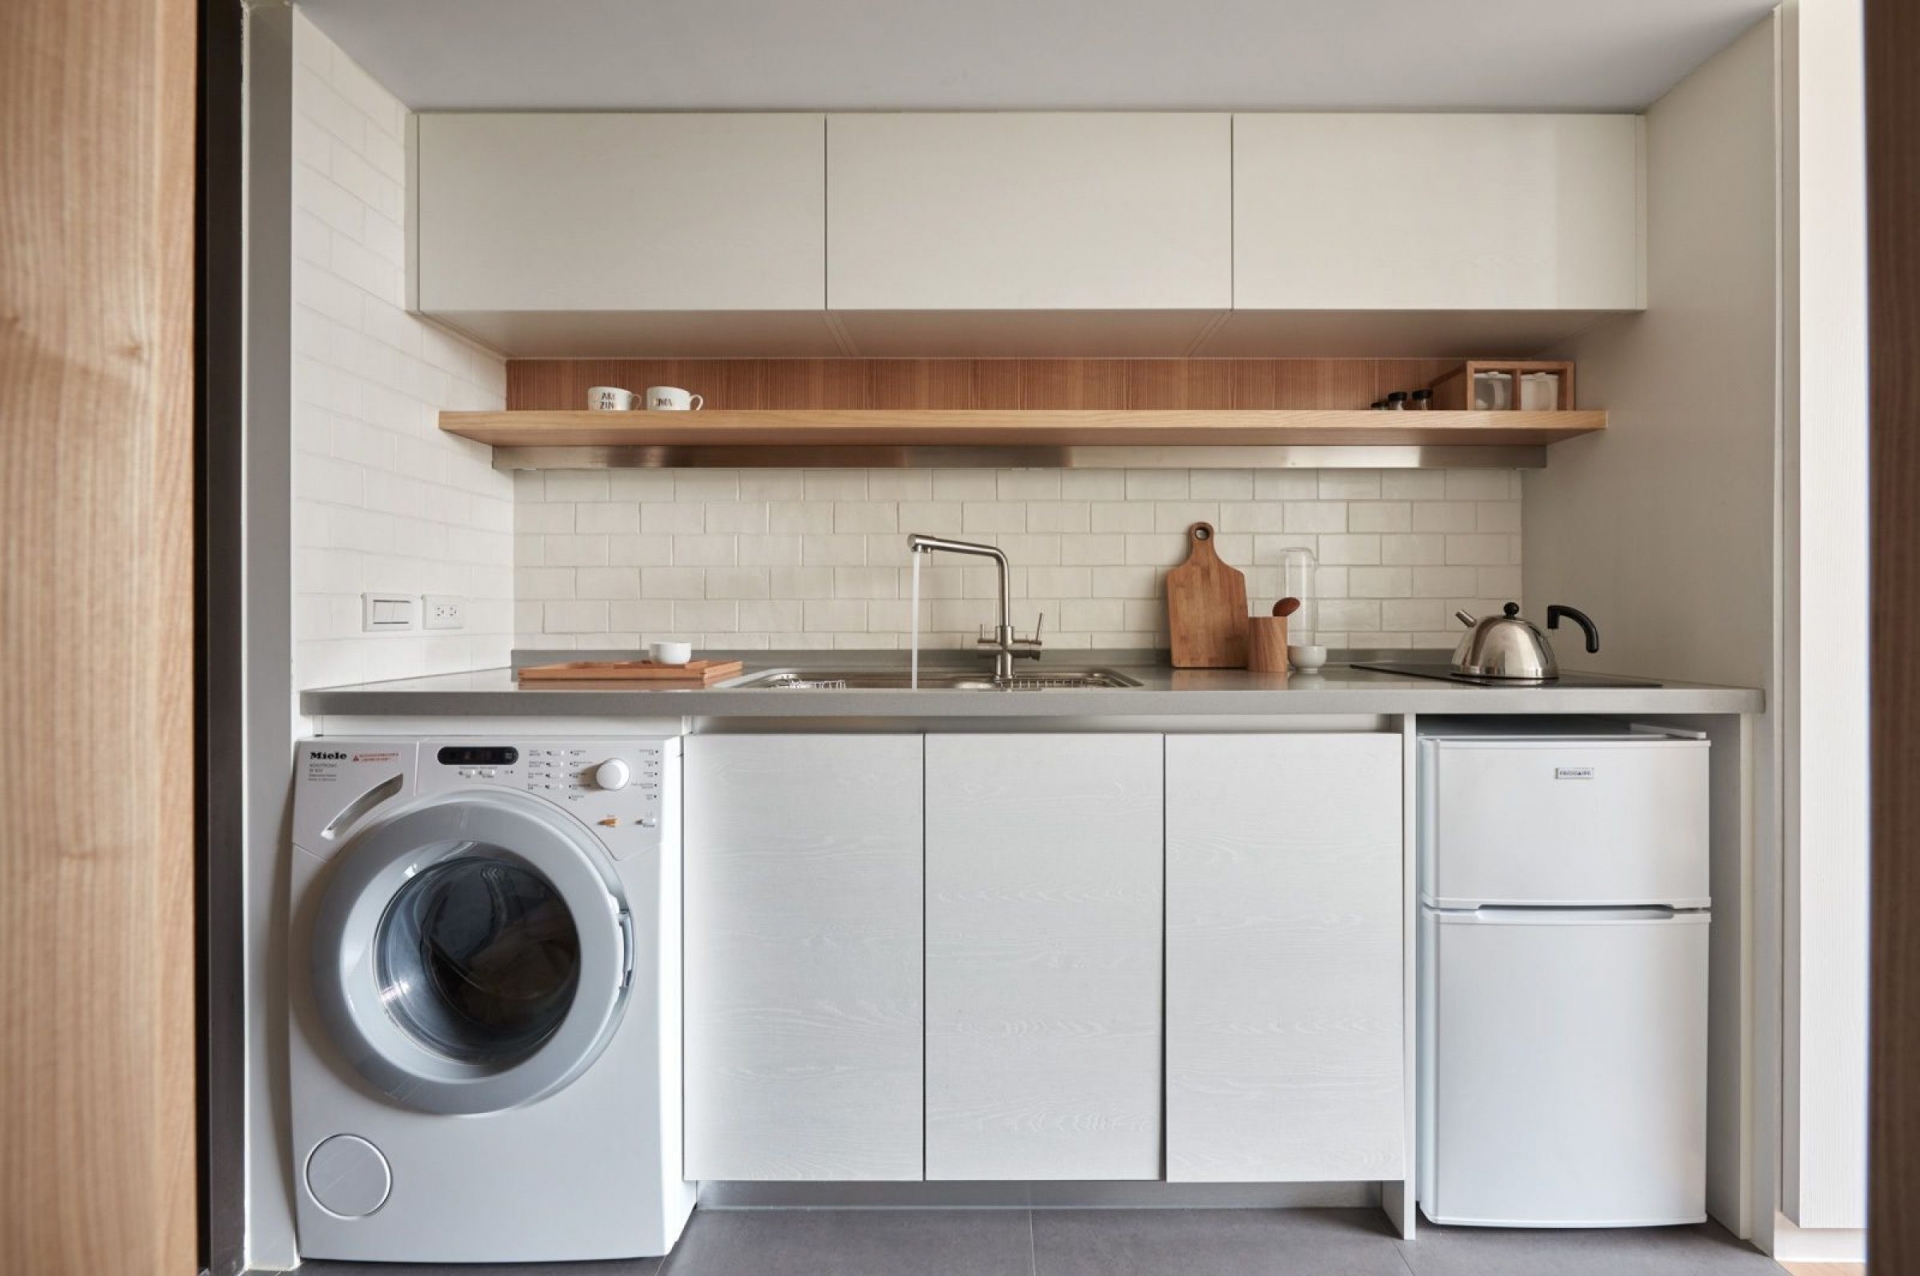 Khi cải tạo căn hộ, A Little Design đã quyết định di dời vị trí của chiếc máy giặt từ phòng tắm sang khu vực phòng bếp, ngay dưới mặt bàn bếp để tiết kiệm không gian.